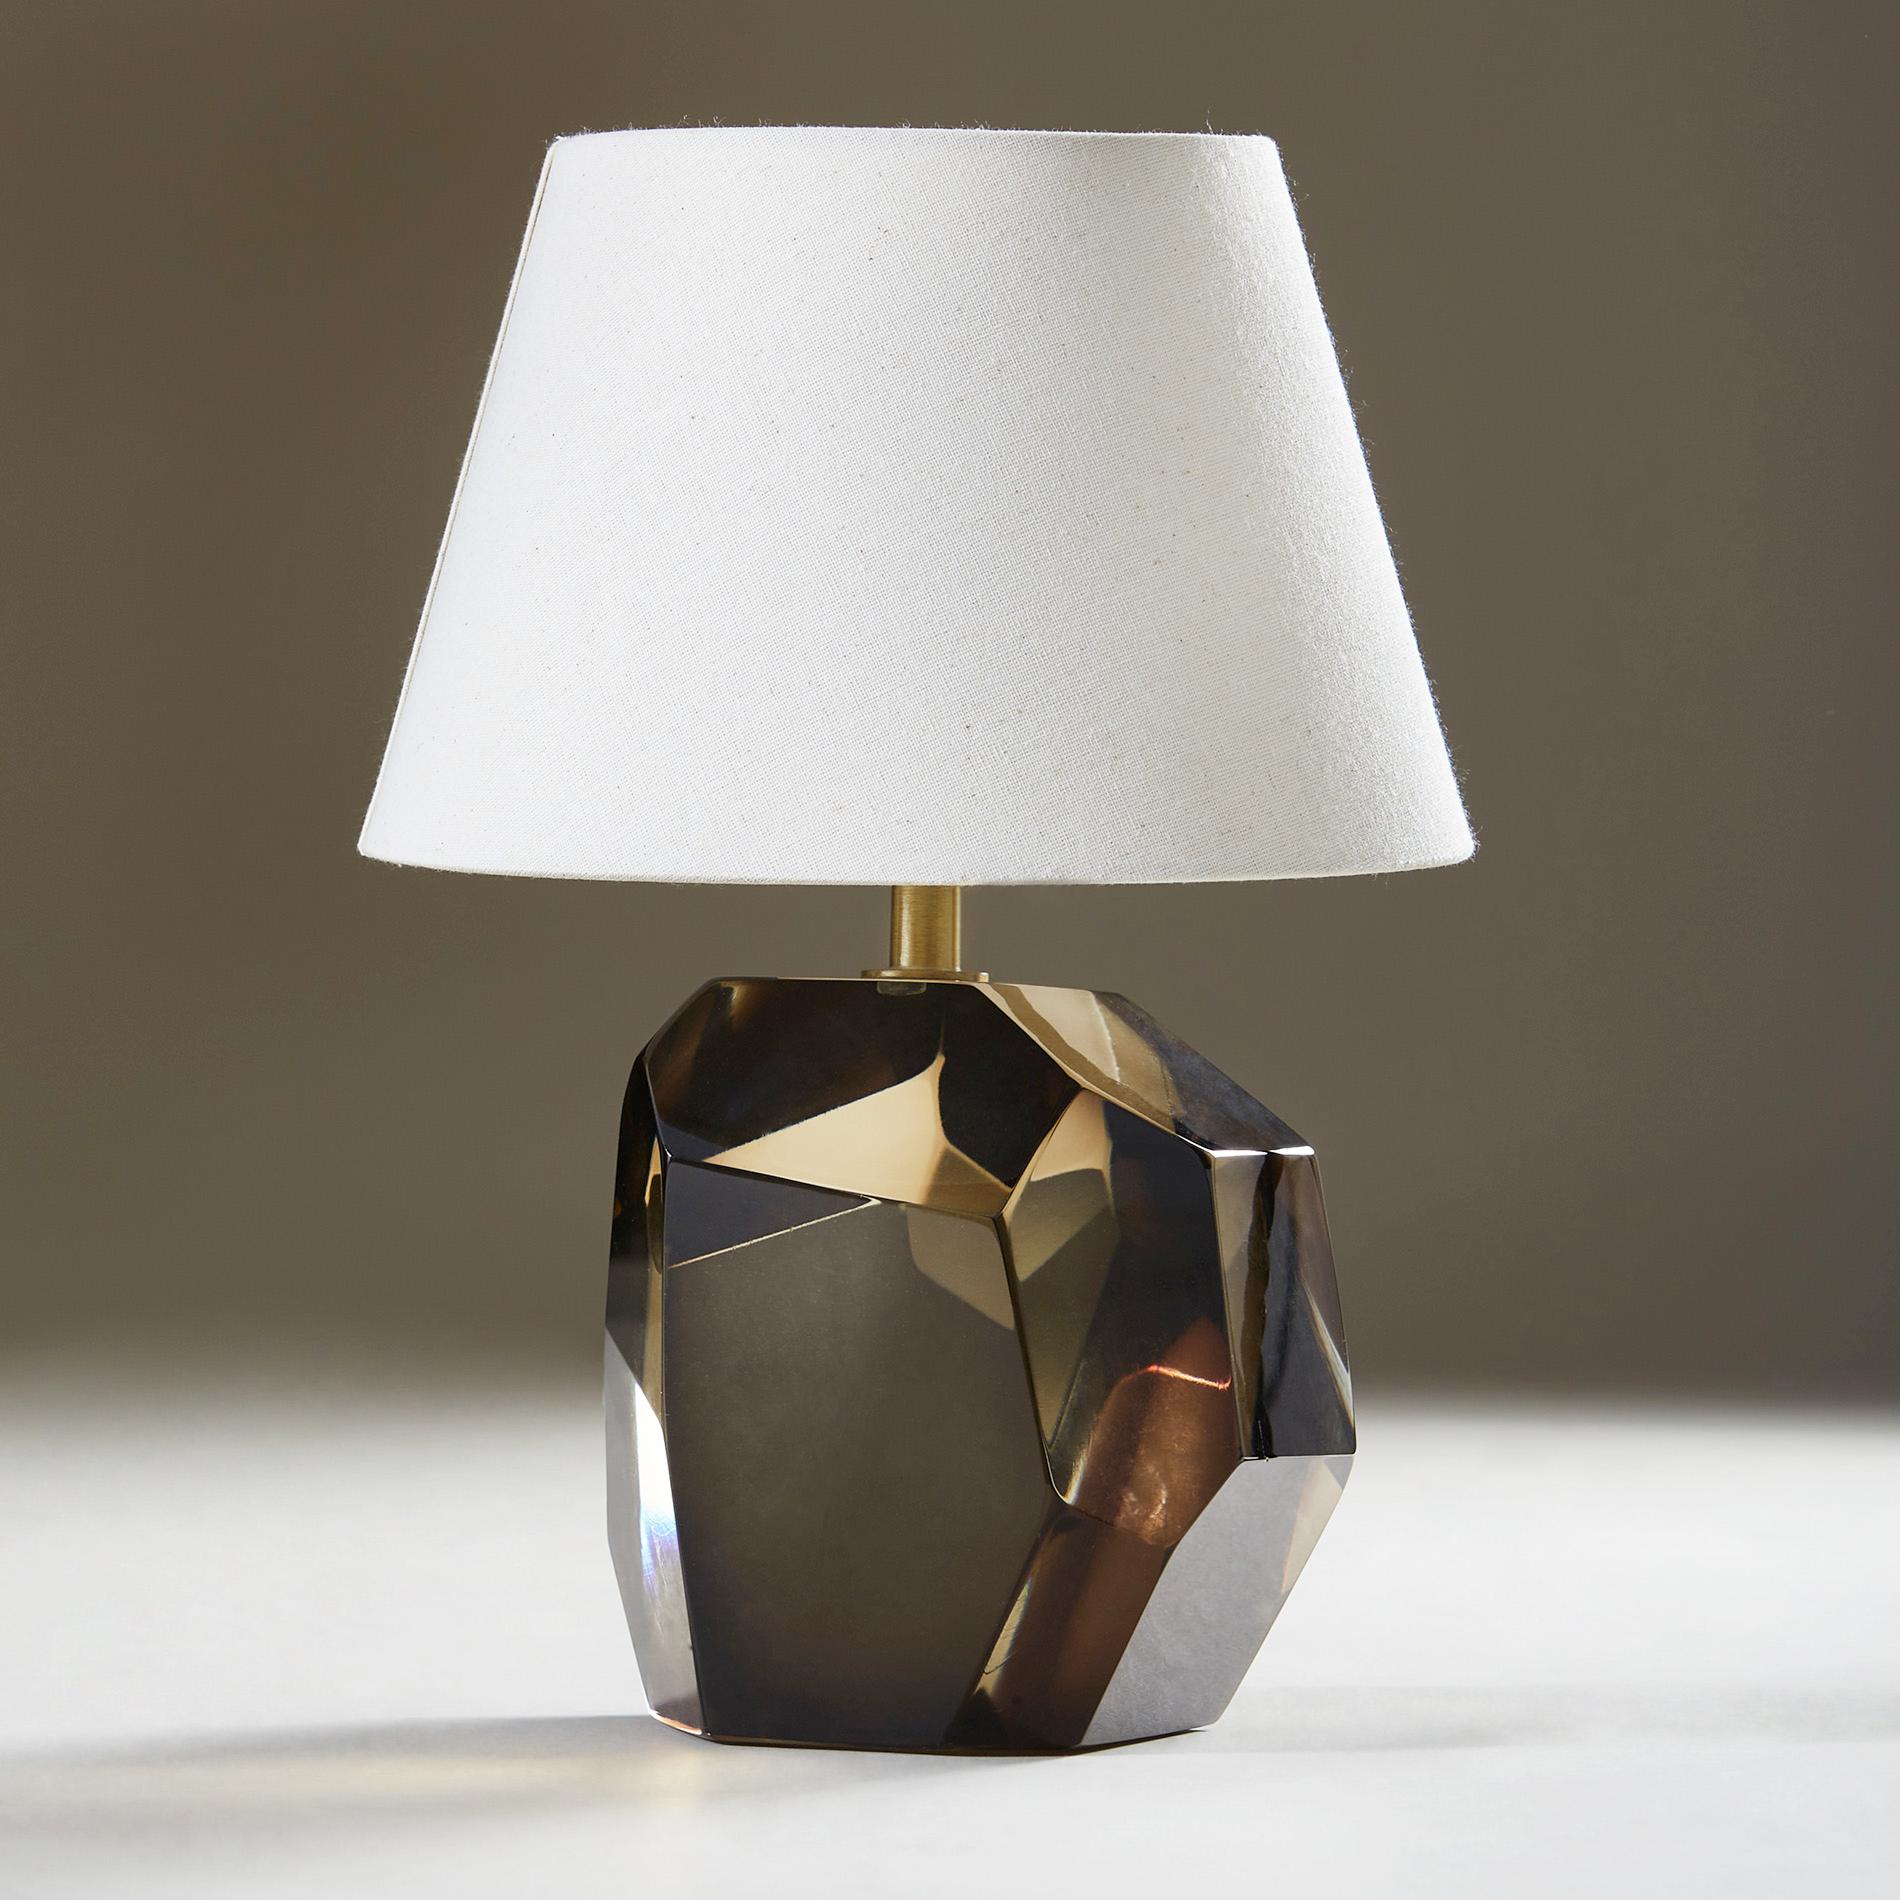 Zeitgenössische, handgefertigte und handpolierte Lampe aus massivem Murano mit Messingbeschlag. Inklusive US-Hand-Dimmschalter.

Signiert 